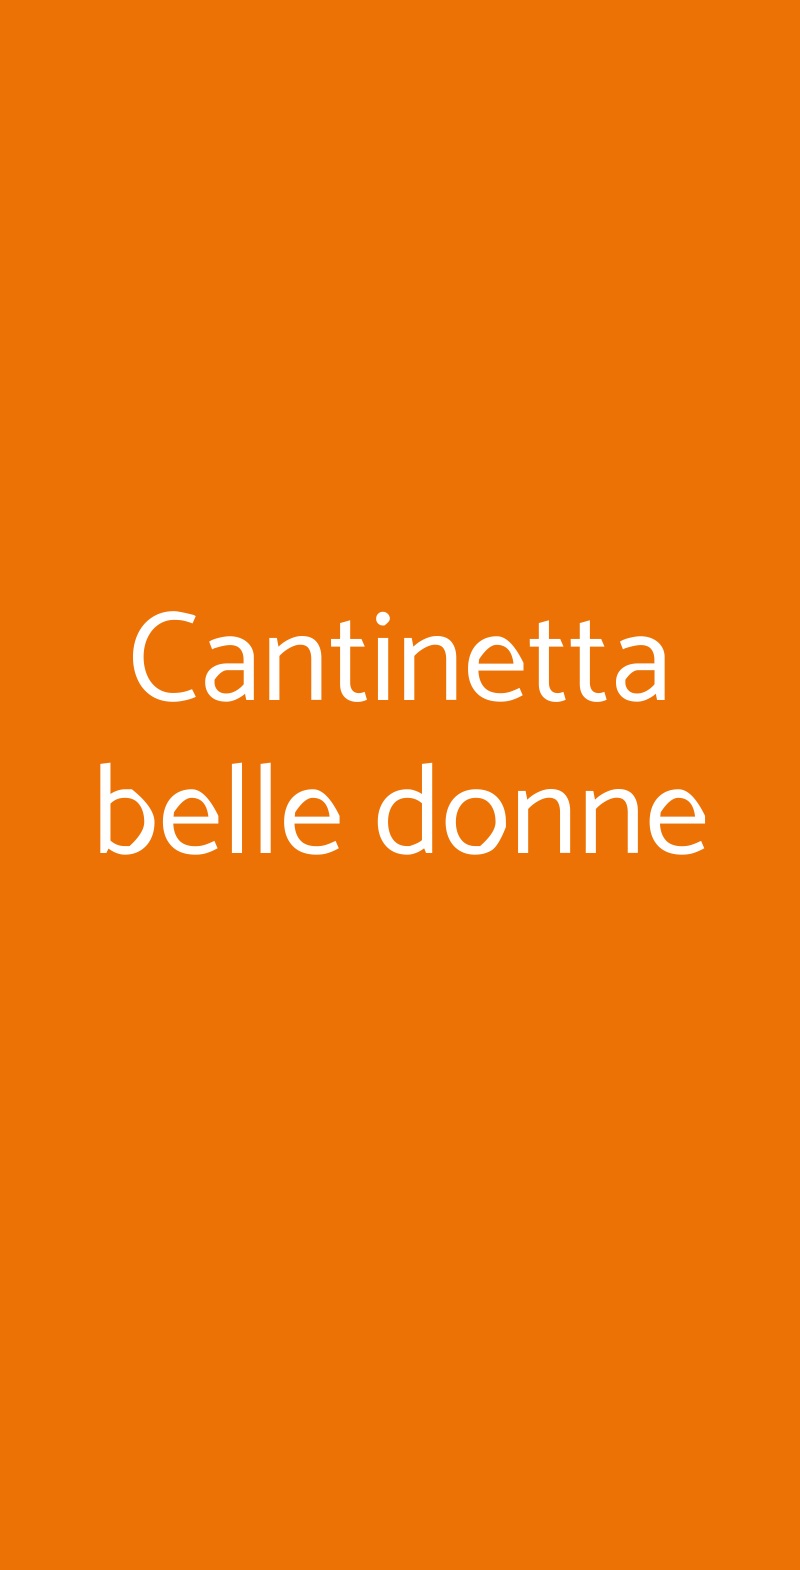 Cantinetta belle donne Milano menù 1 pagina